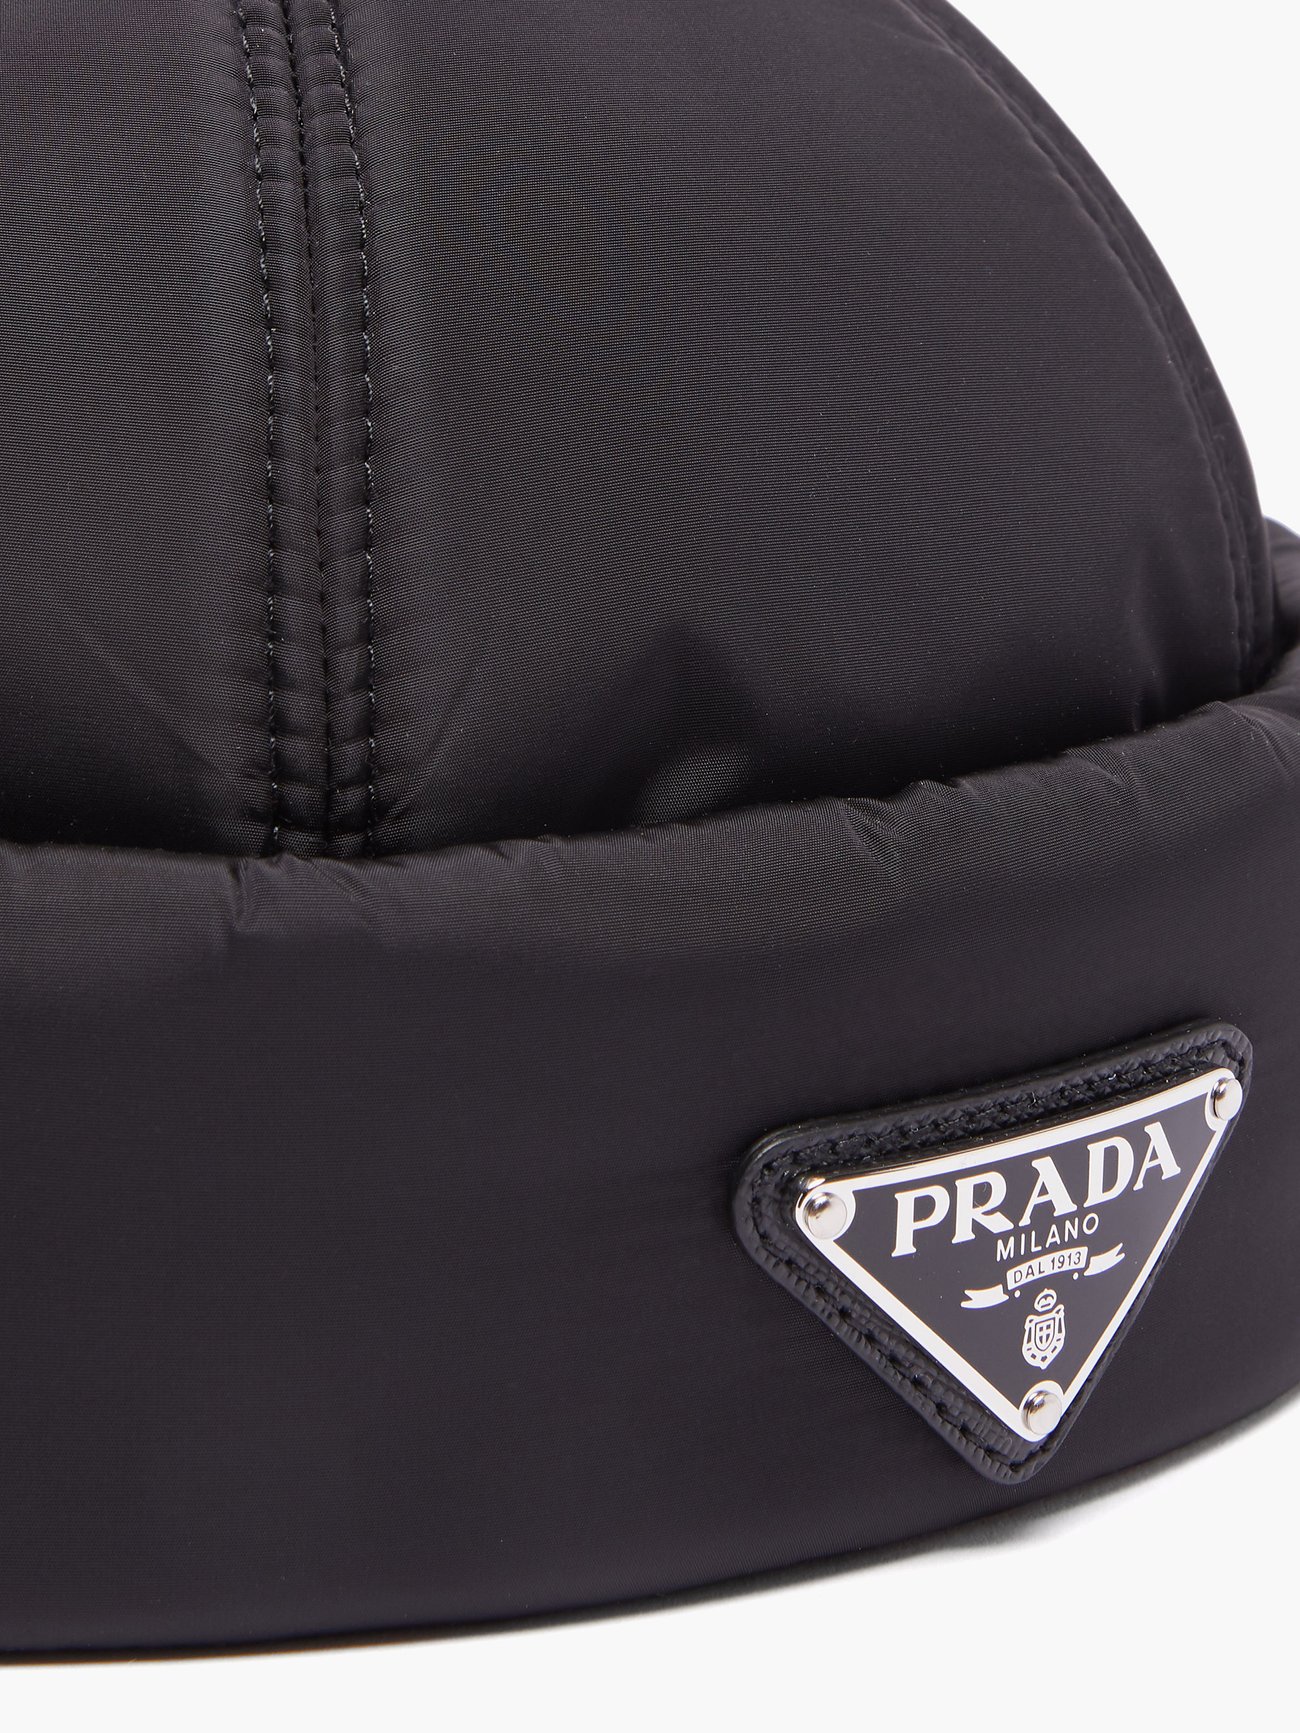 HBX - Make a statement in the Prada Bucket Hat. Shop the